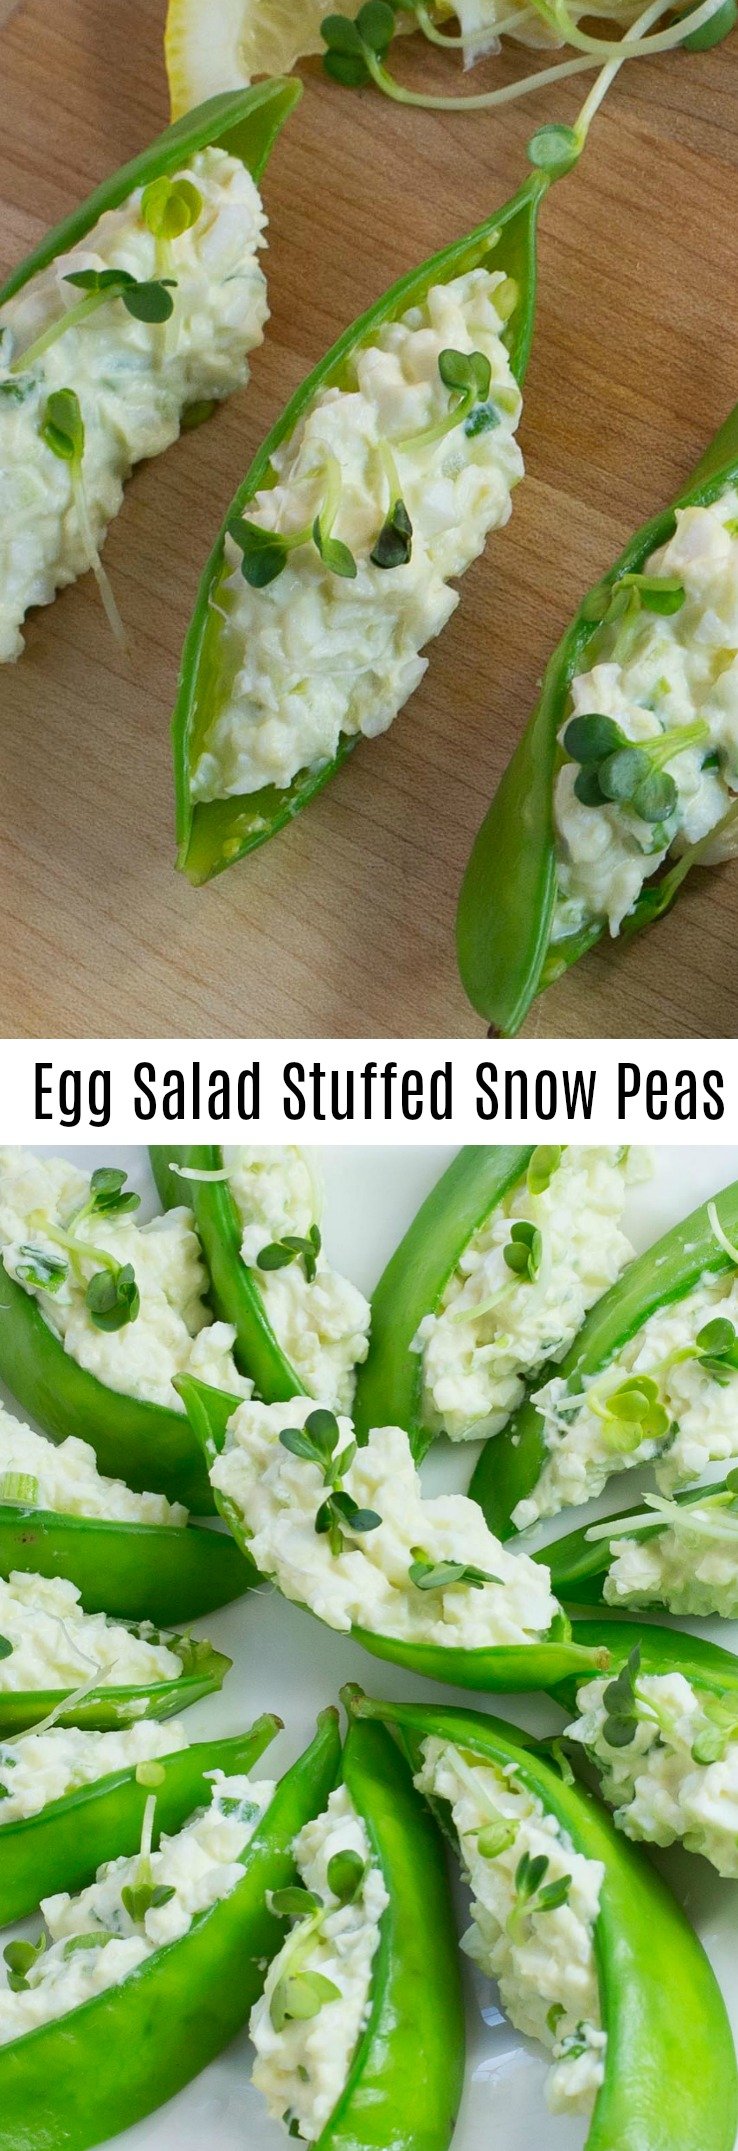 Egg Salad Stuffed Snow Peas